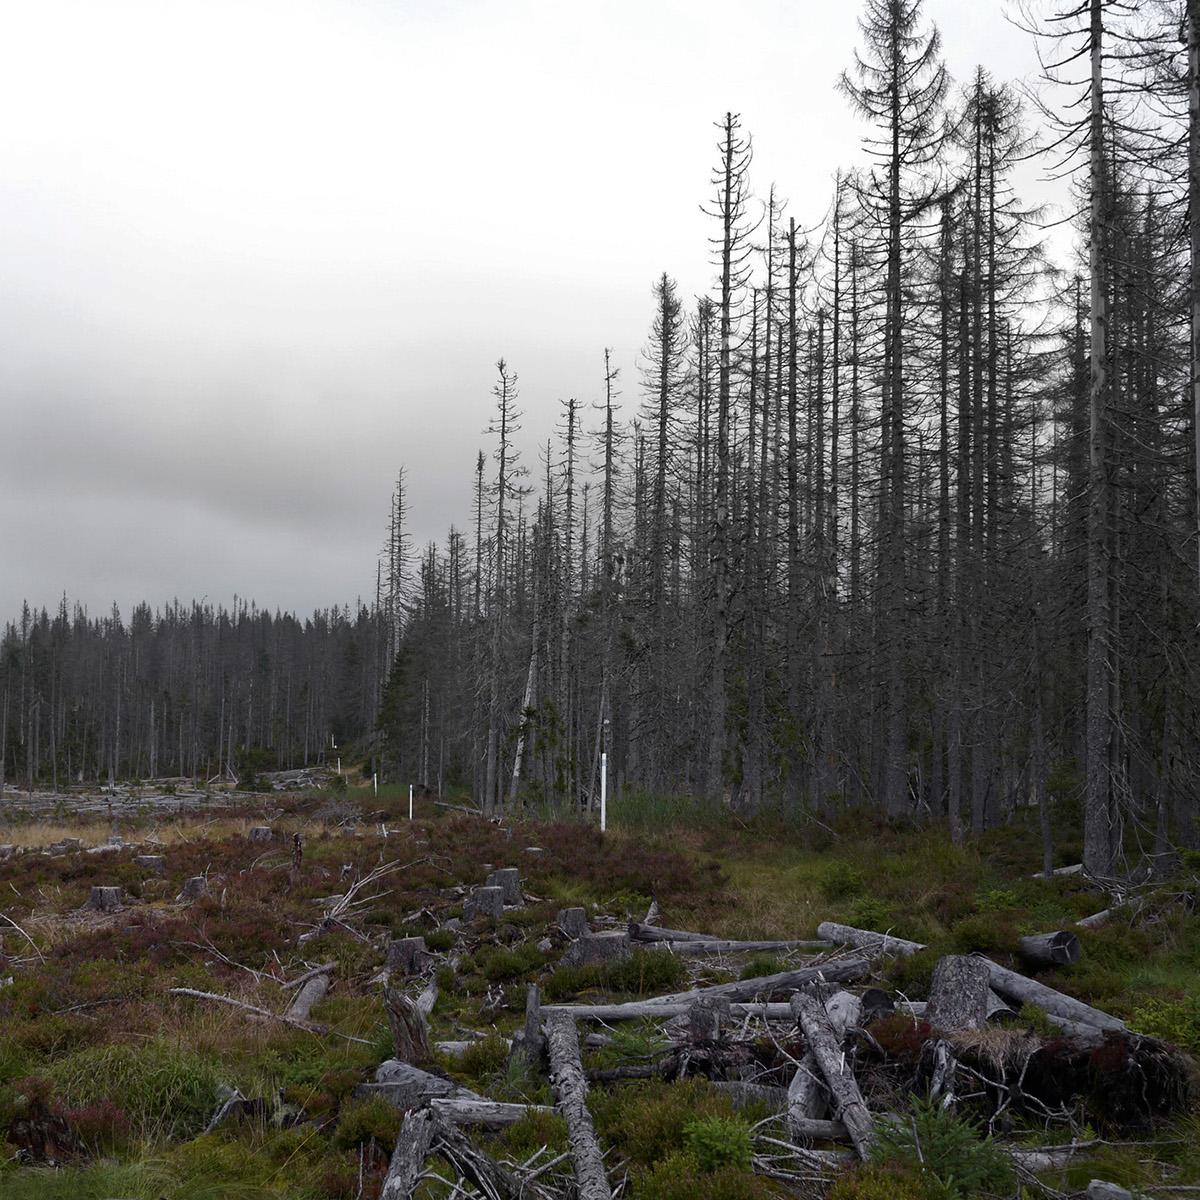 wood trees devastated Landscape germany fog mist backland borderland